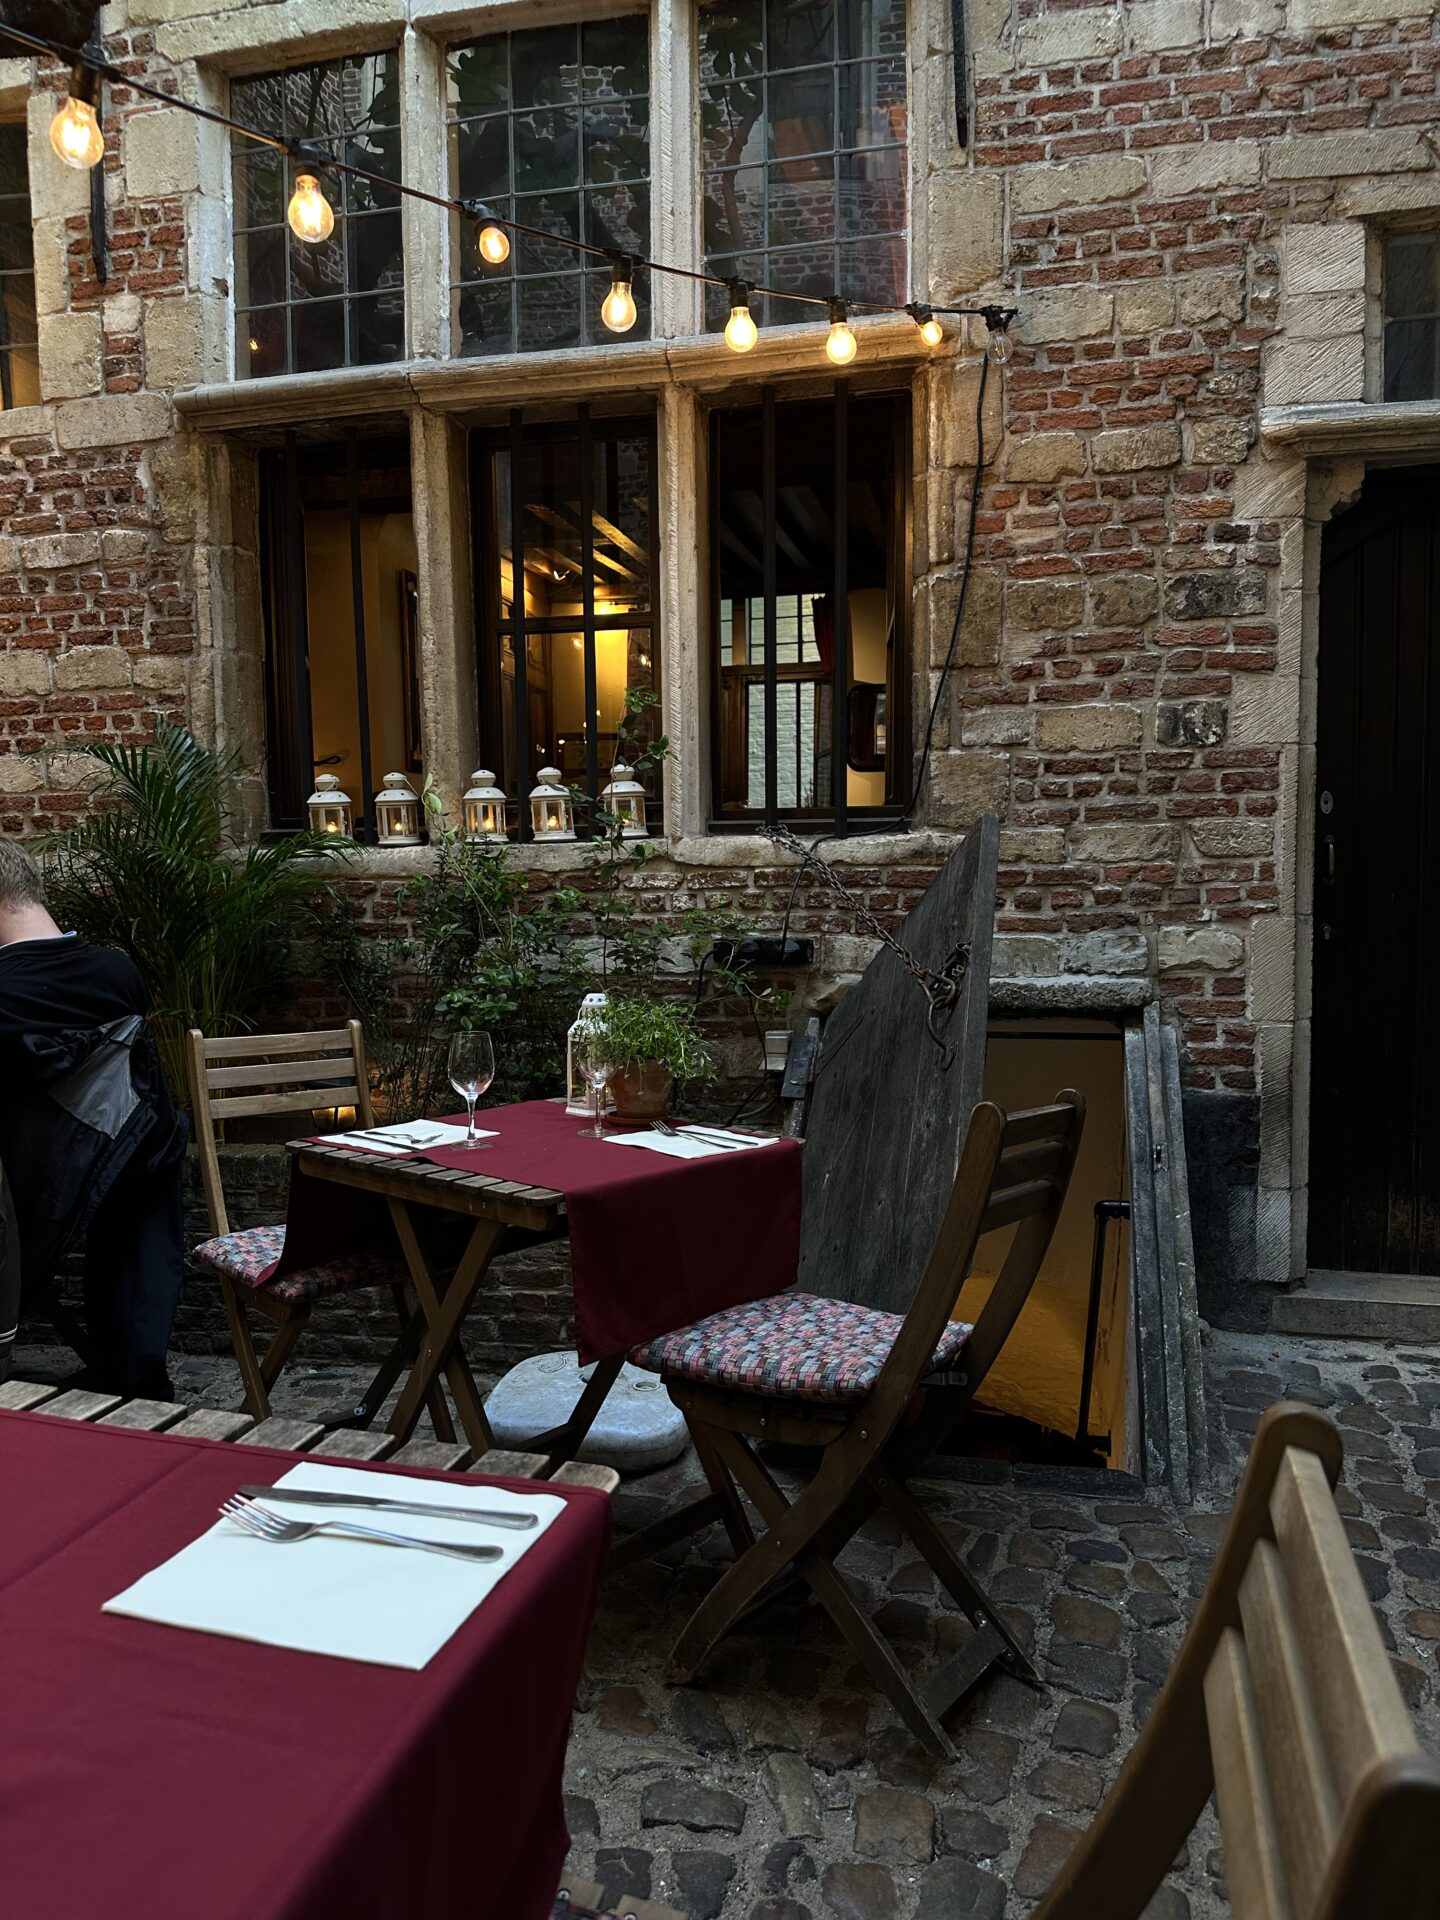 restaurant 't hofke in Antwerp belgium